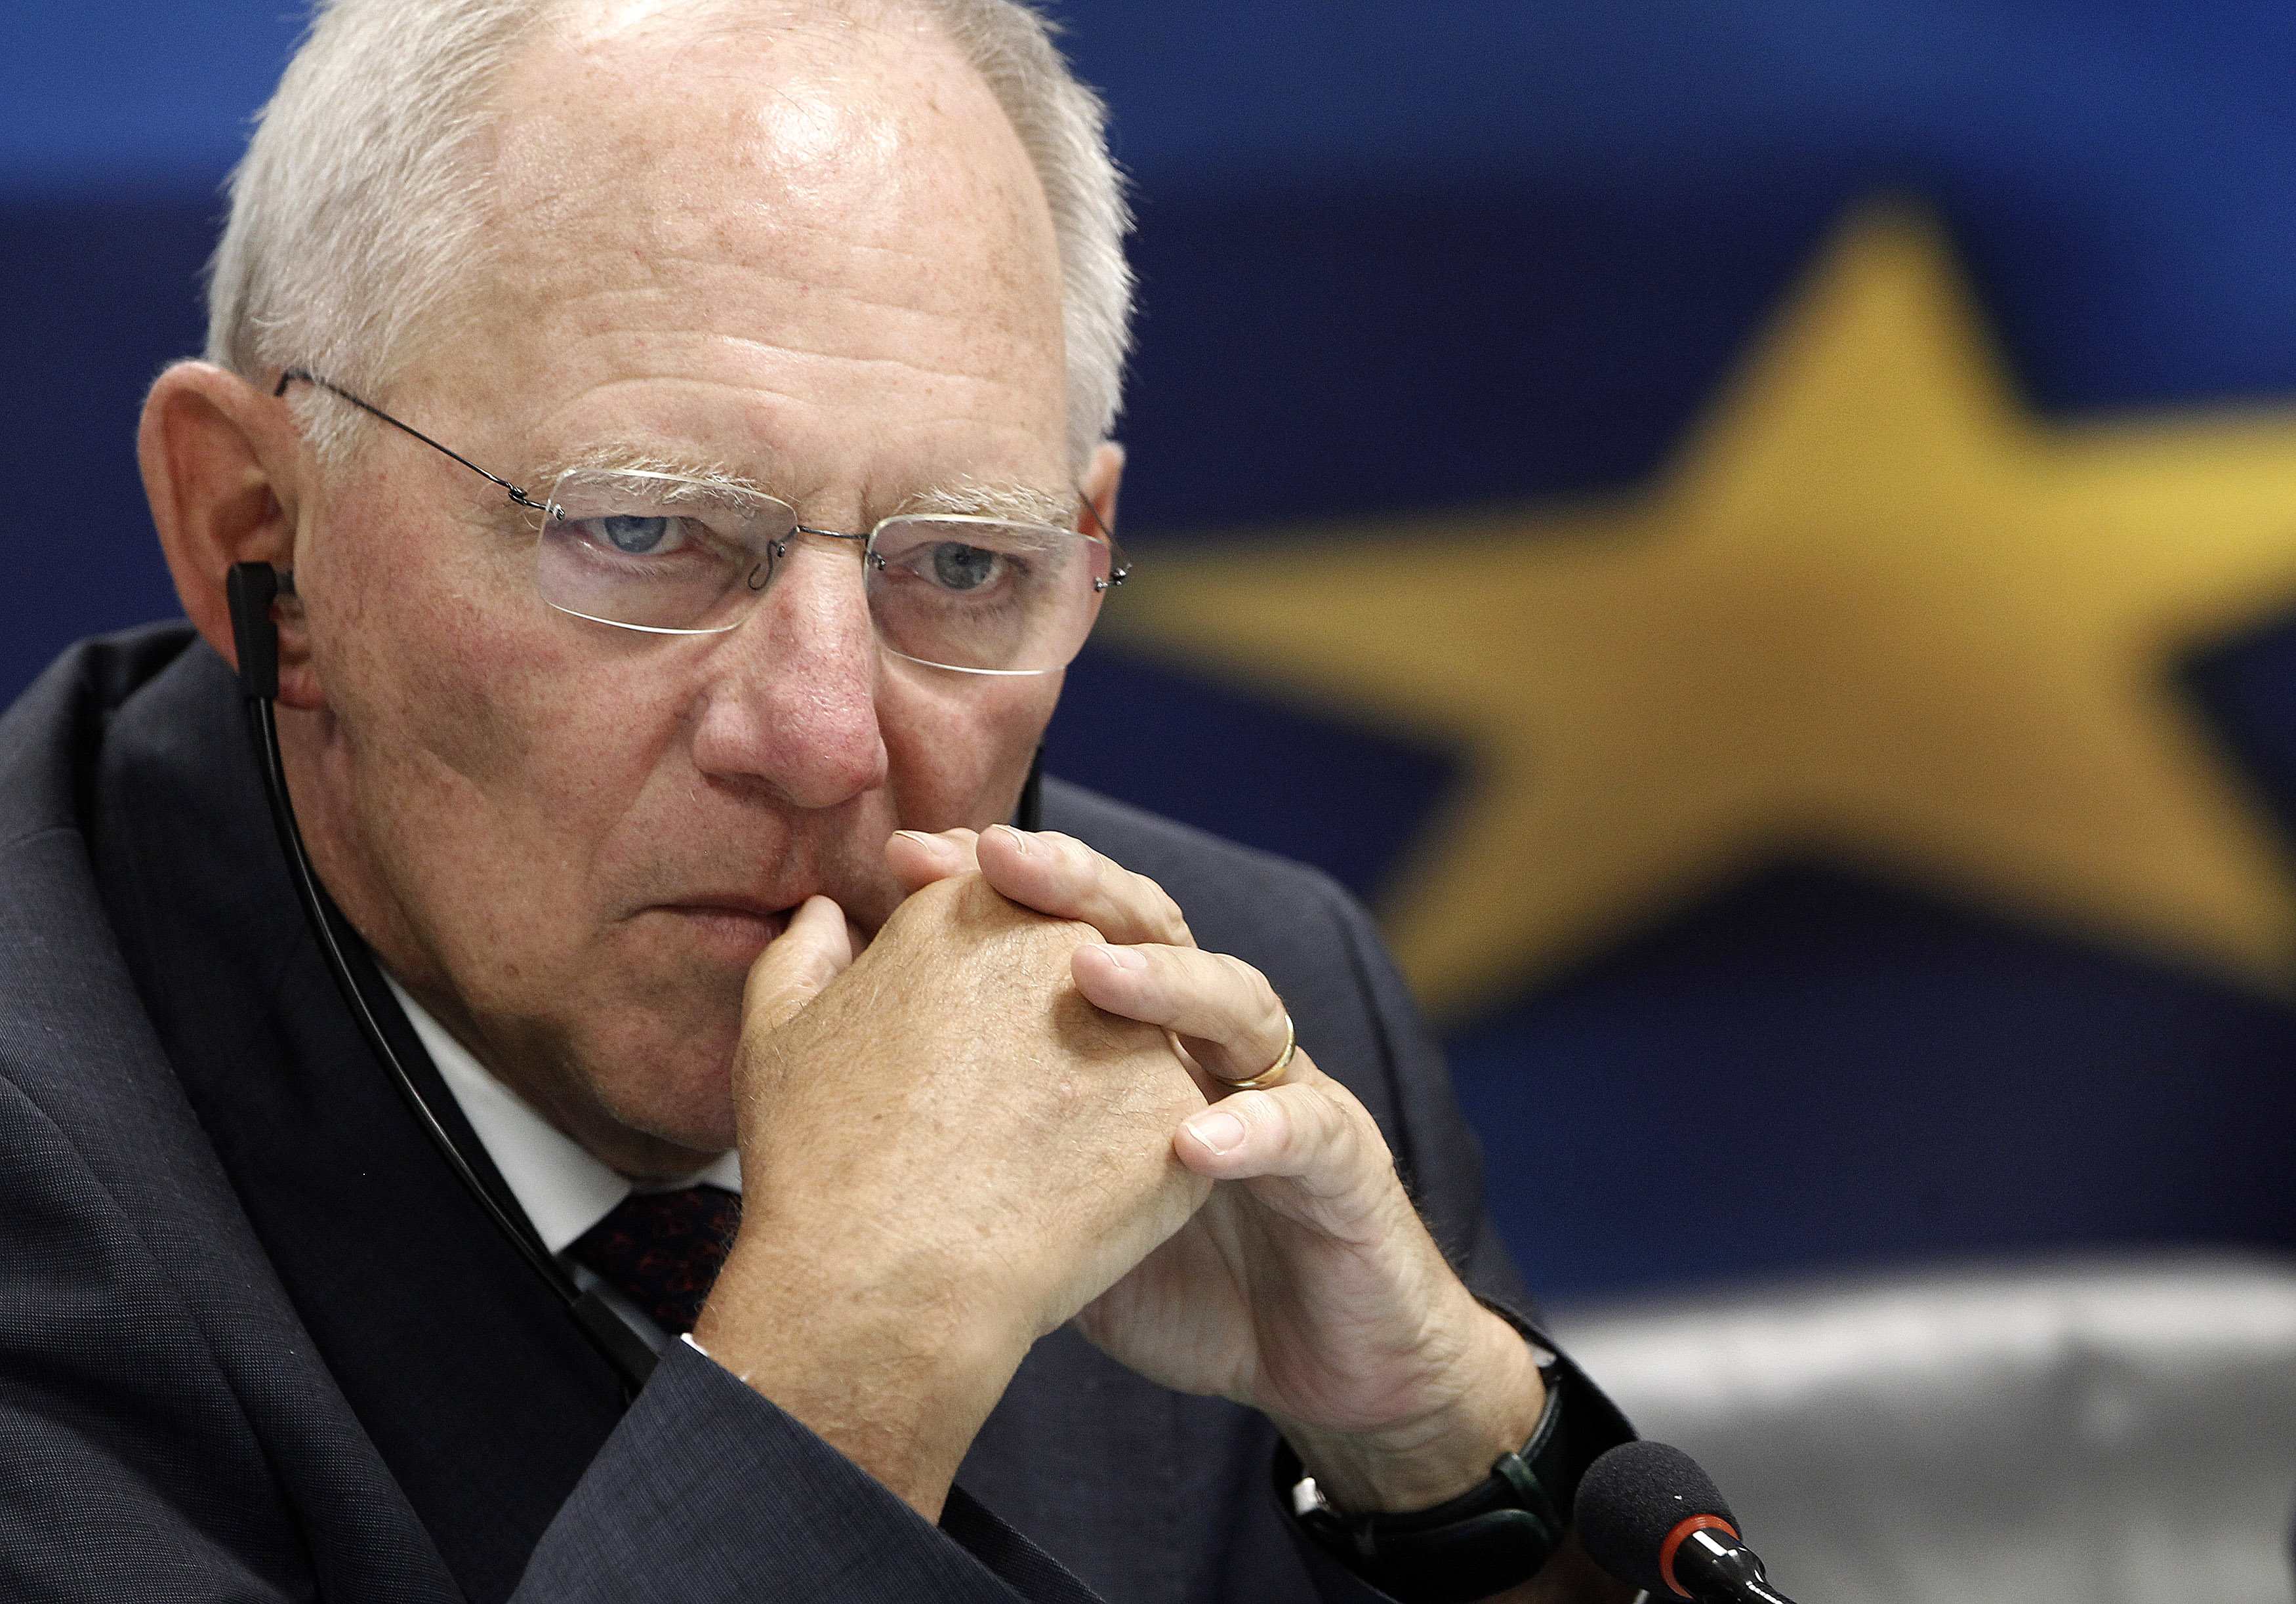 Θα παραμείνει ο Βόλφγκανγκ Σόιμπλε στο γερμανικό υπουργείο Οικονομικών;